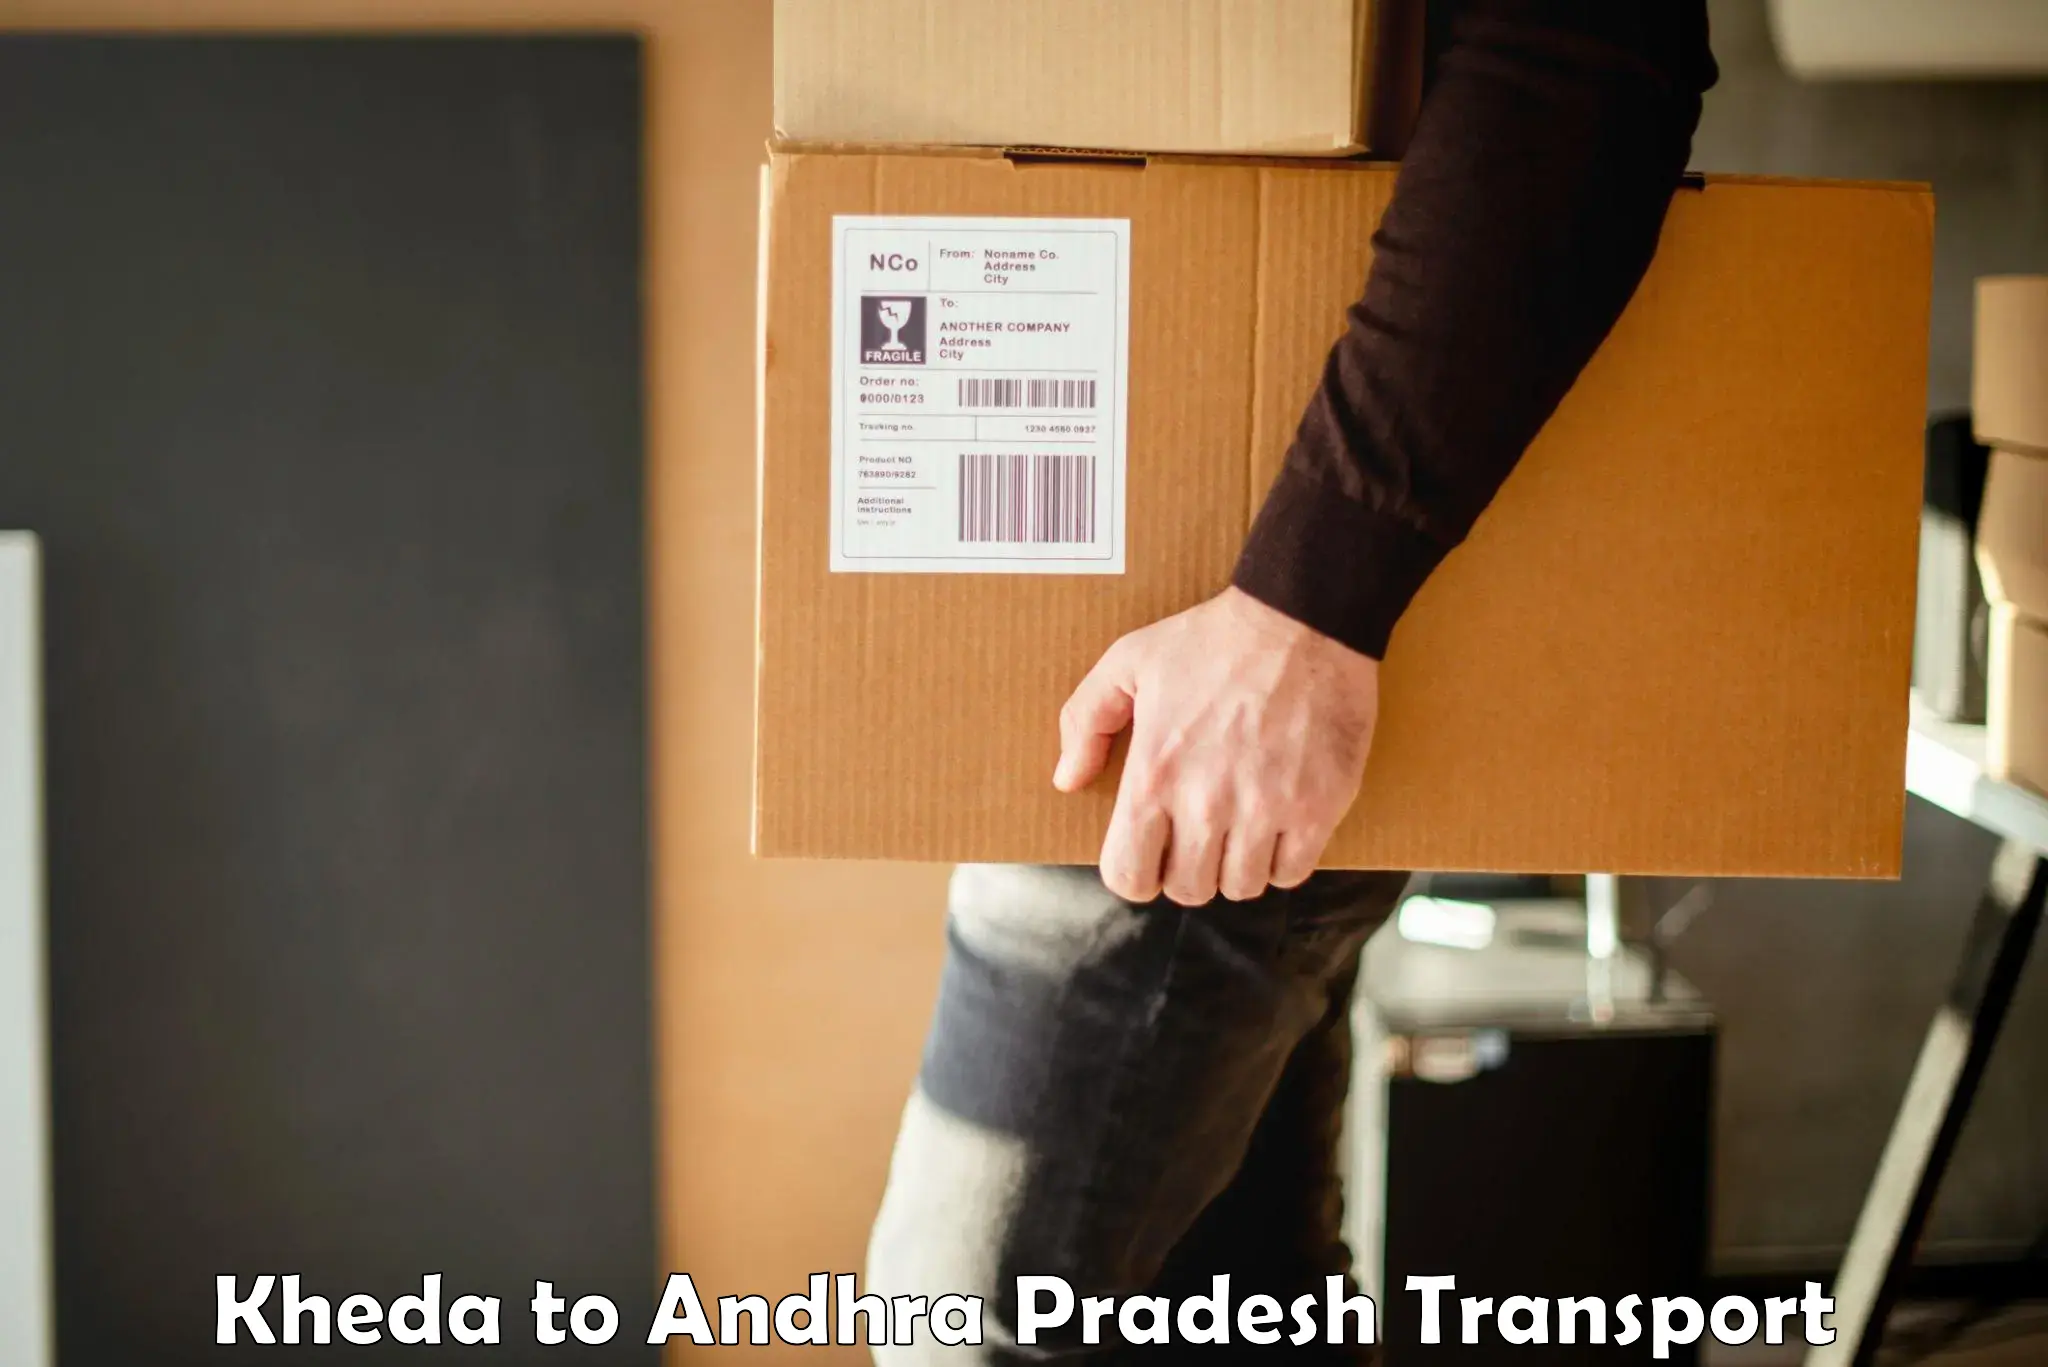 Online transport service Kheda to Tirupati